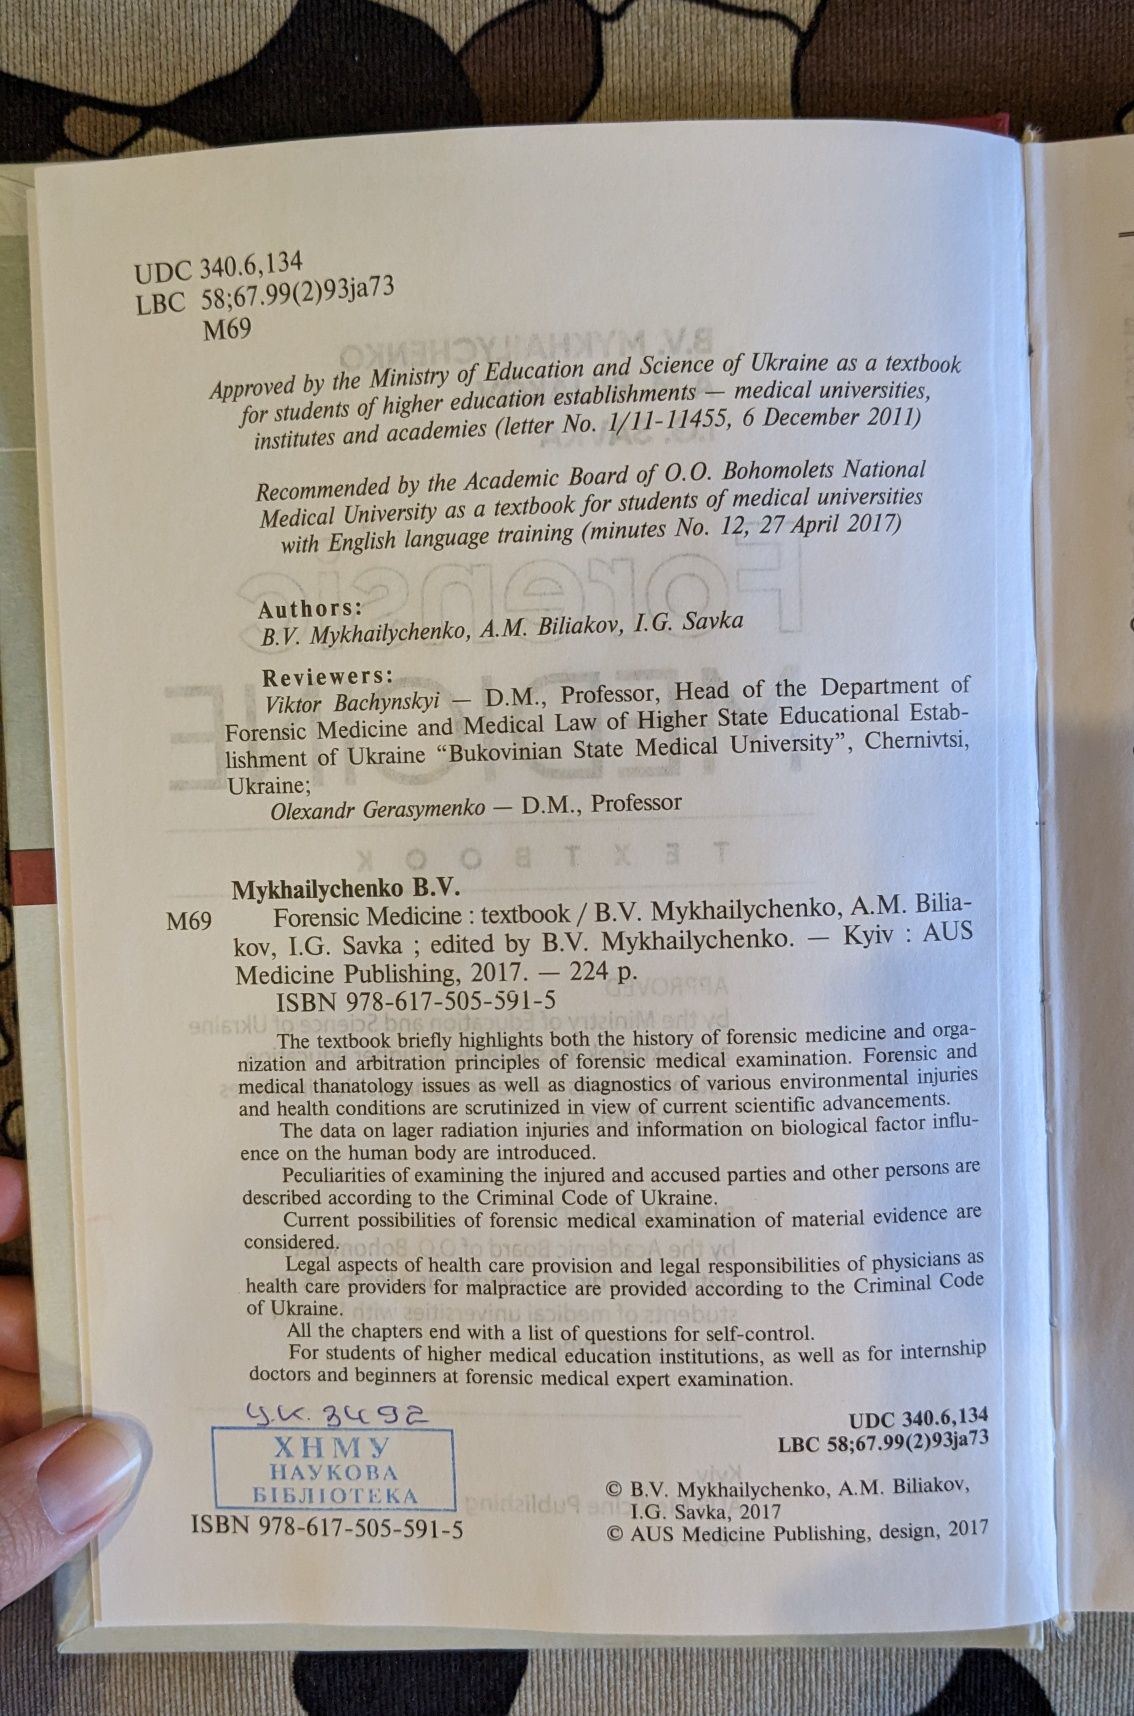 Forensic MEDICINE textbook B.V. Mykhailychenko A.M. BILIAKOV

I.G. SAV